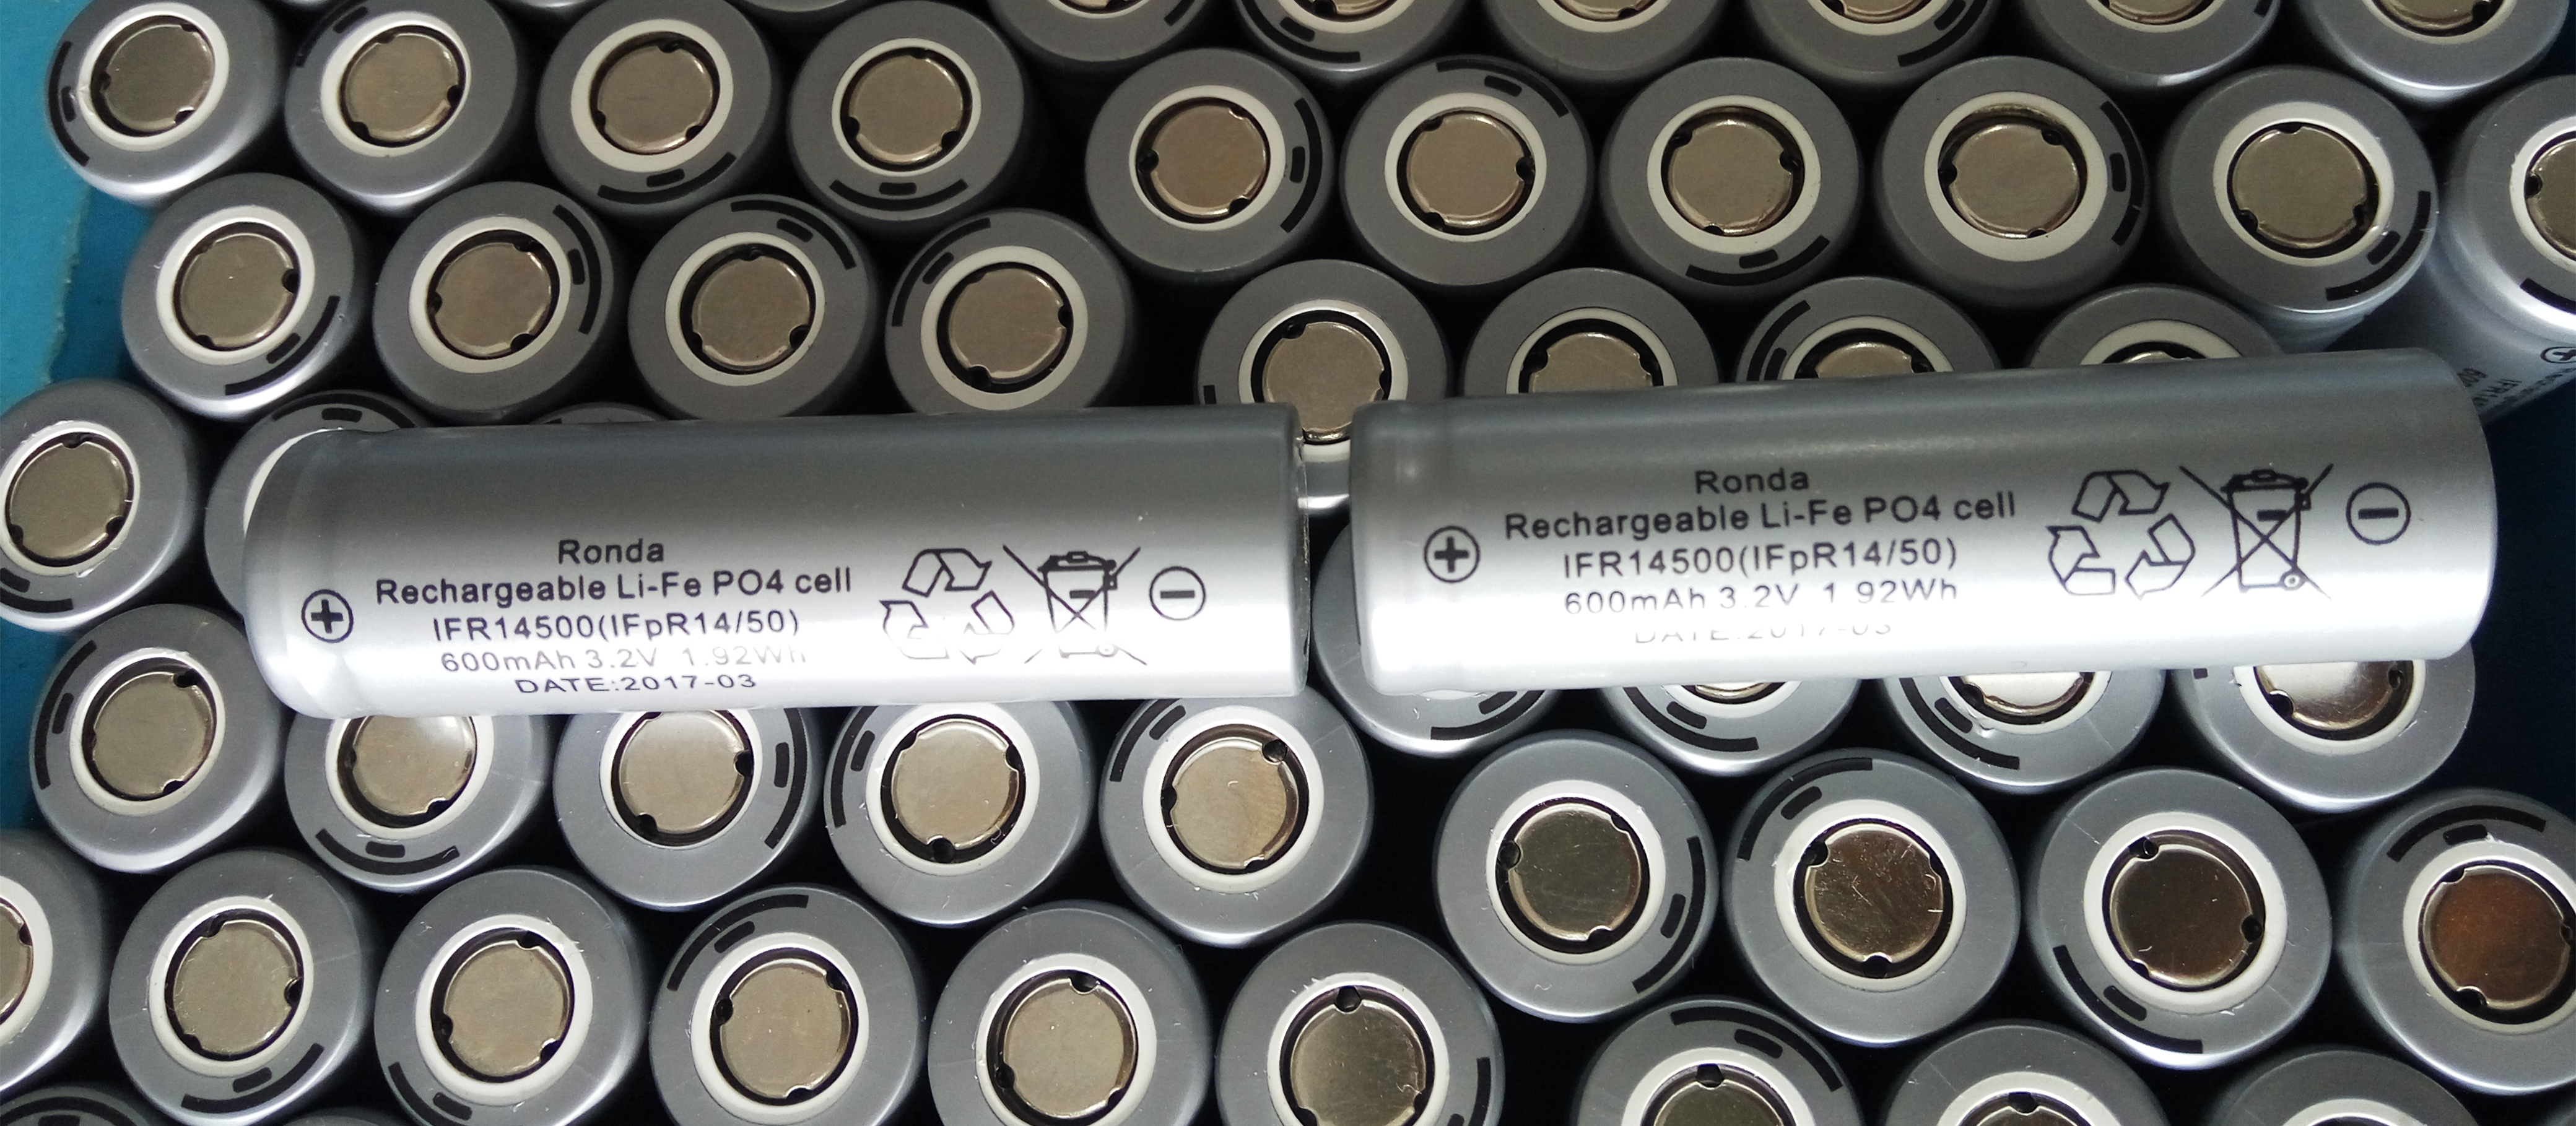 江门市朗达锂电池 磷酸铁锂14500 3.2v 圆柱形